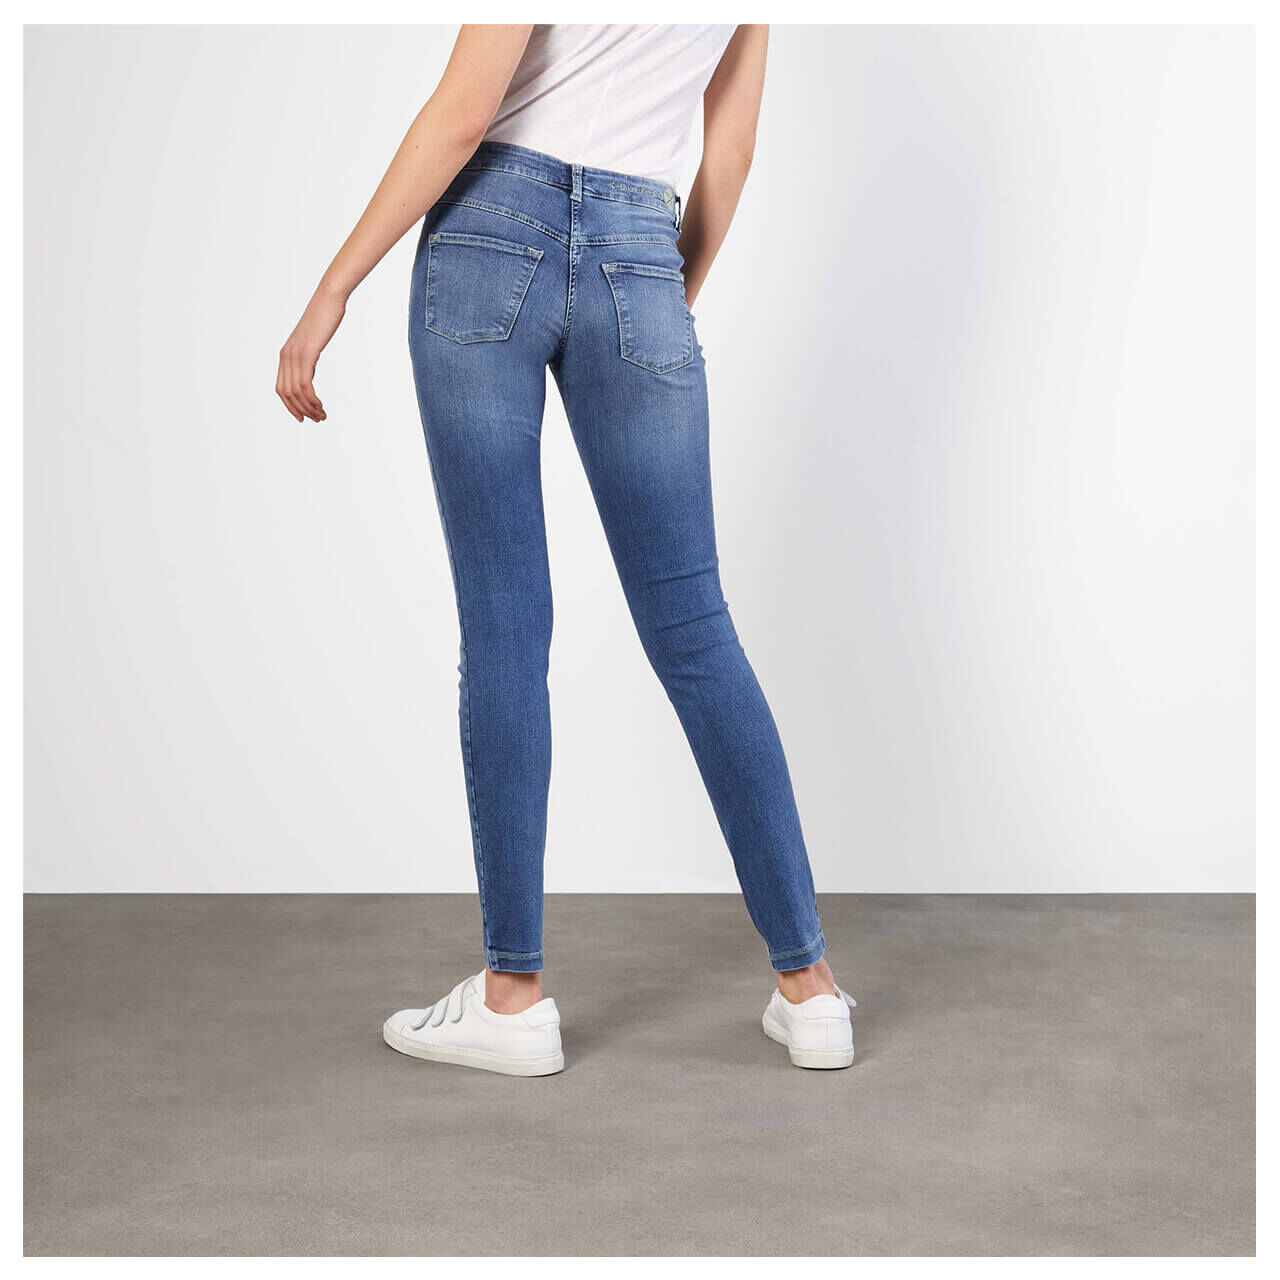 MAC Jeans Dream Skinny für Damen in Mittelblau angewaschen, FarbNr.: D432